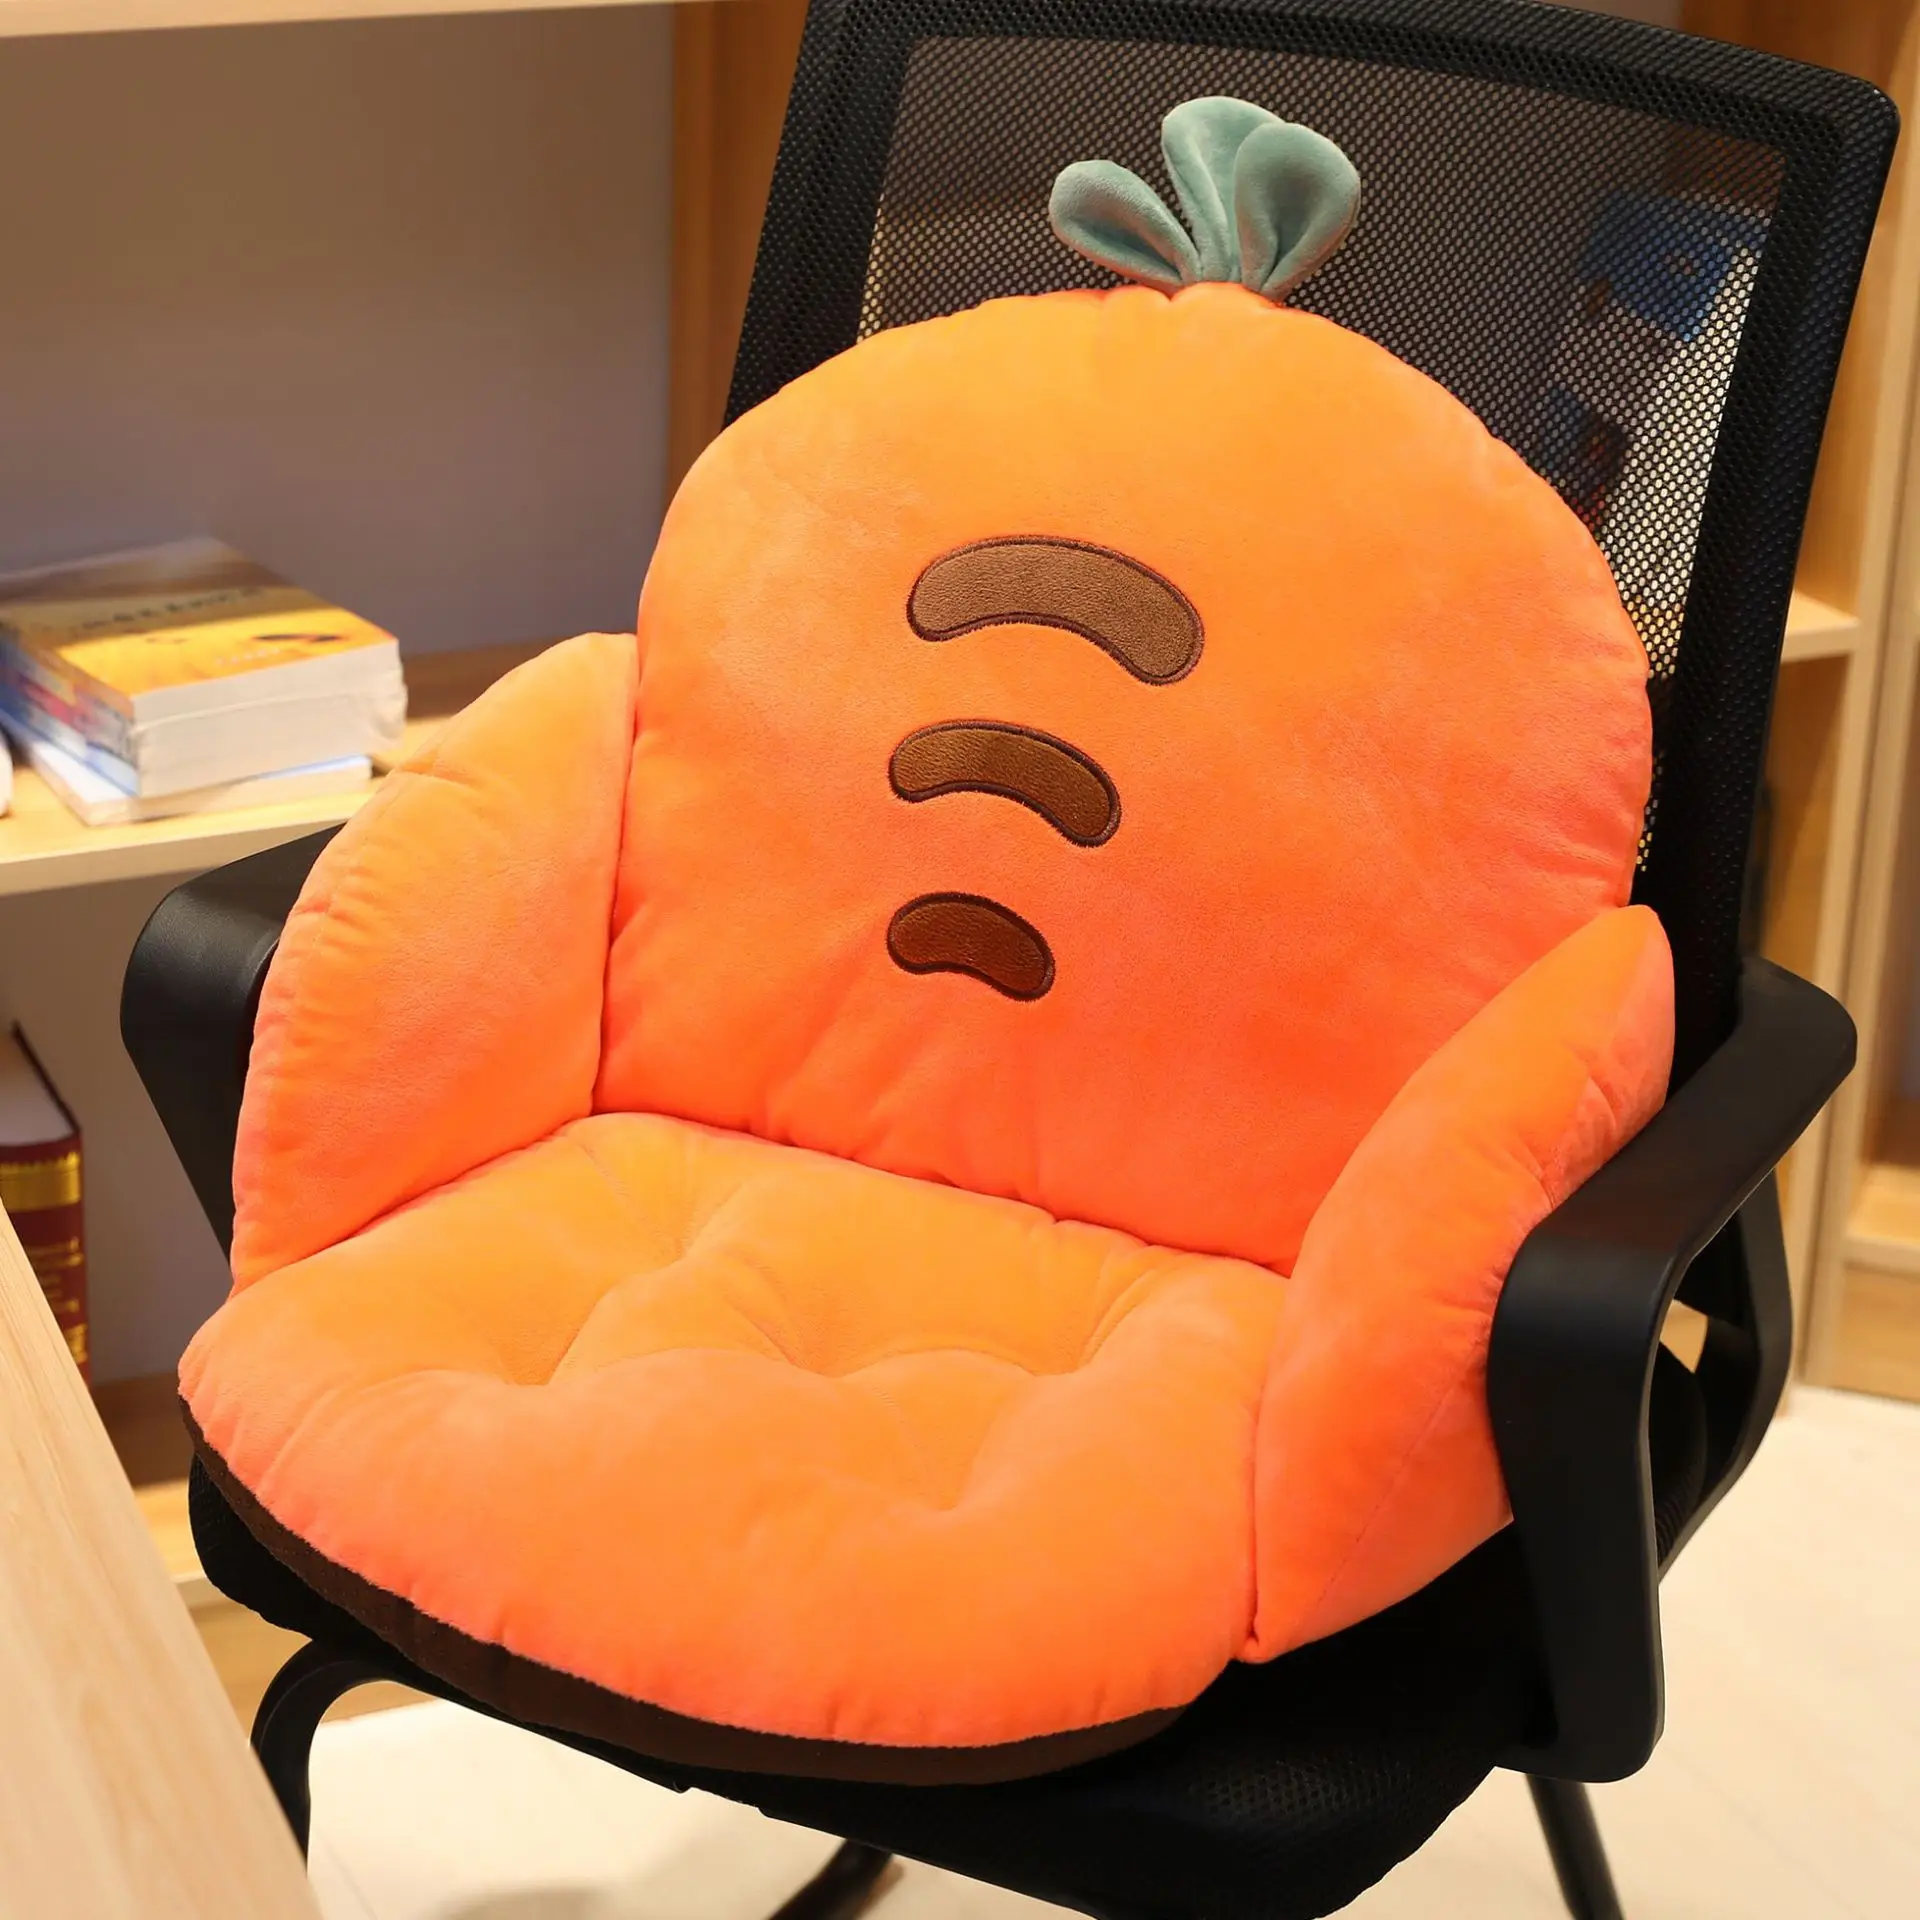 Мультяшное кресло подушка для поясницы Задняя поддержка уплотненная подушка для сиденья Подушка для пляжа домашнее сидение для офиса, машины накладки на ягодицы домашний декор - Цвет: Цвет: желтый